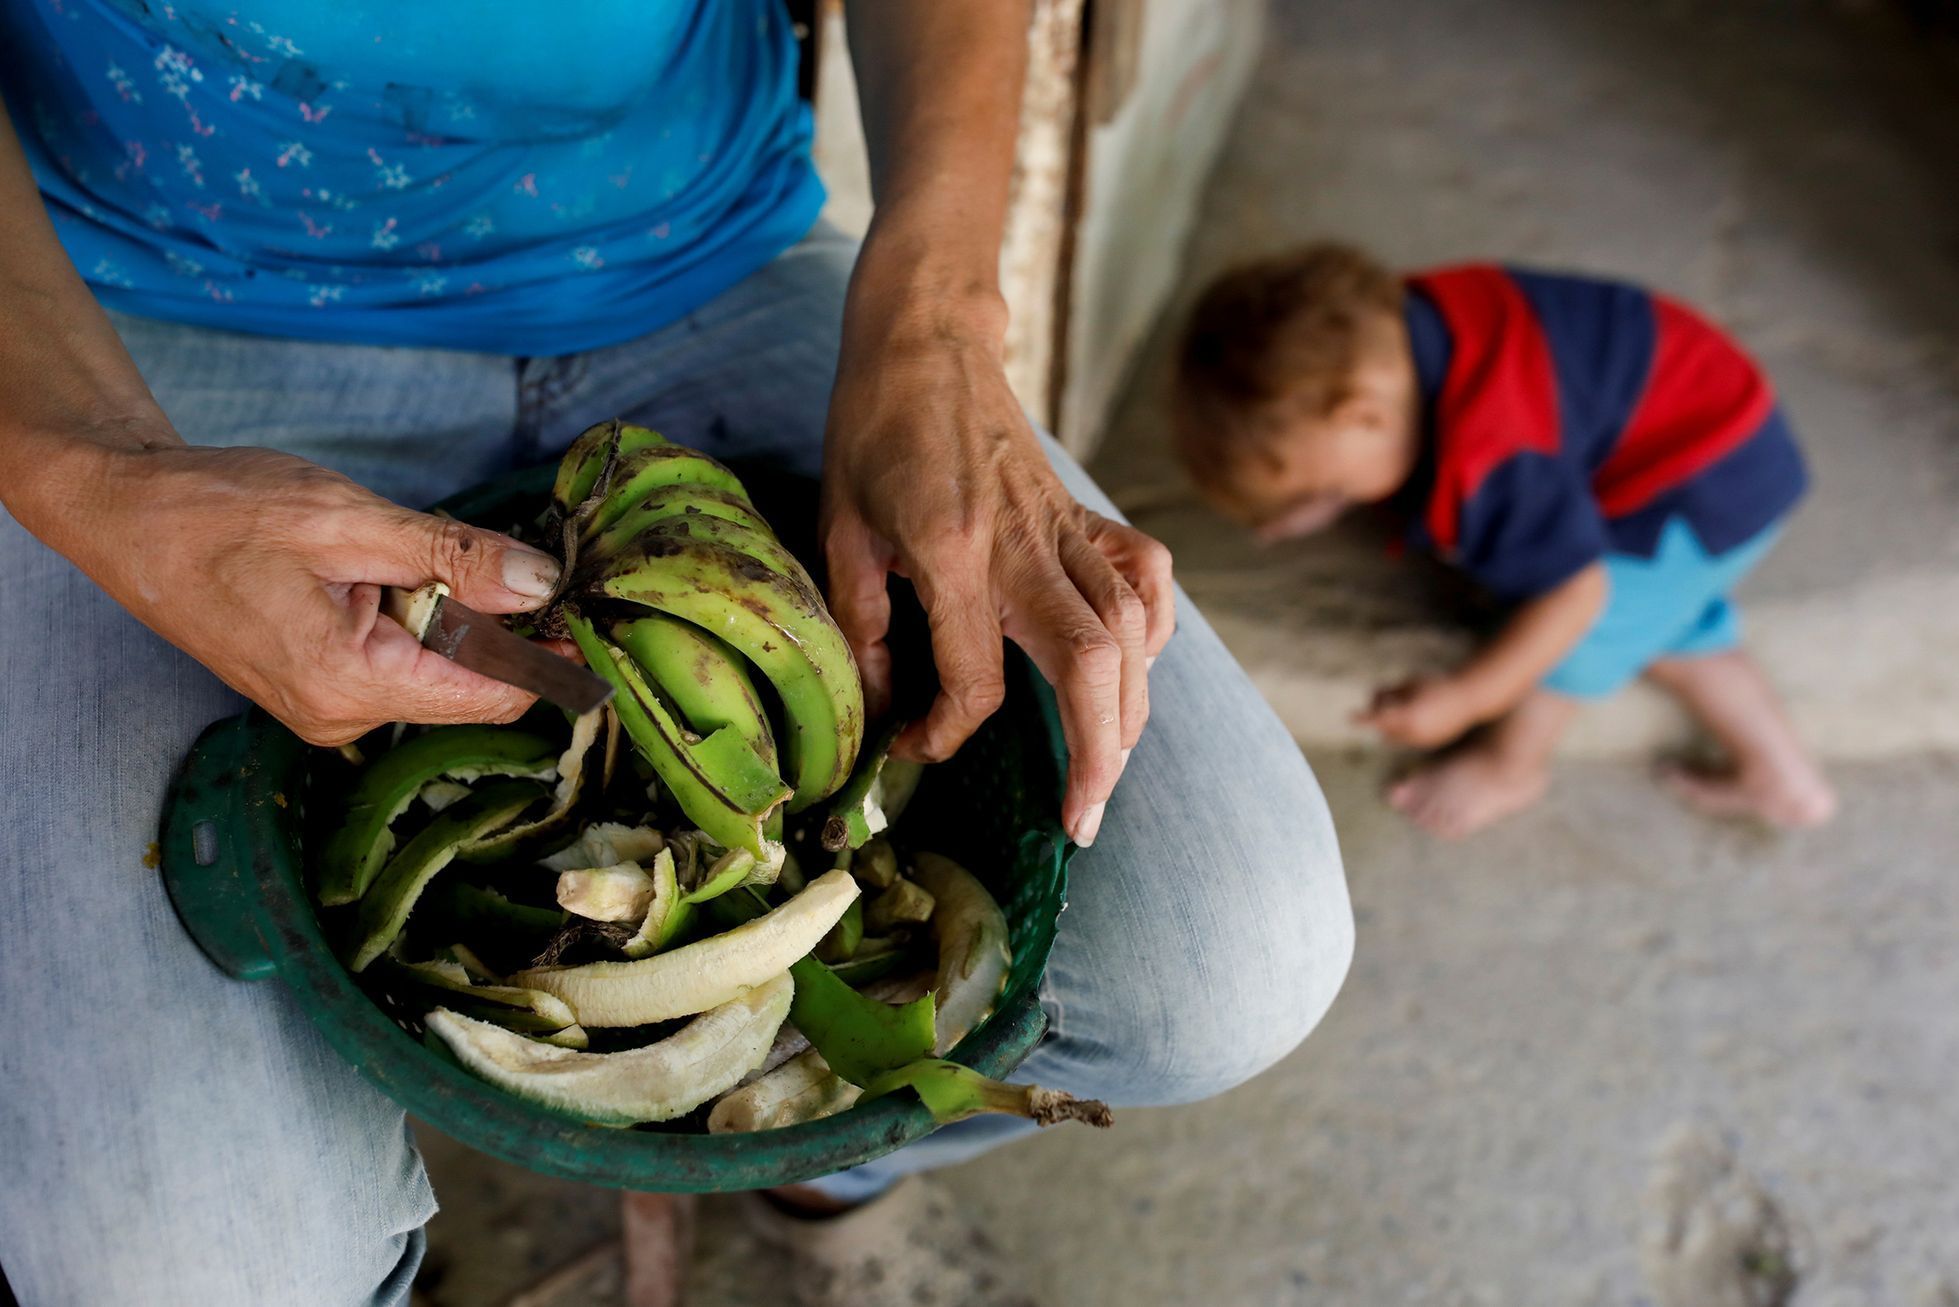 Fotogalerie / Život v krizí sužované Venezuele / Reuters